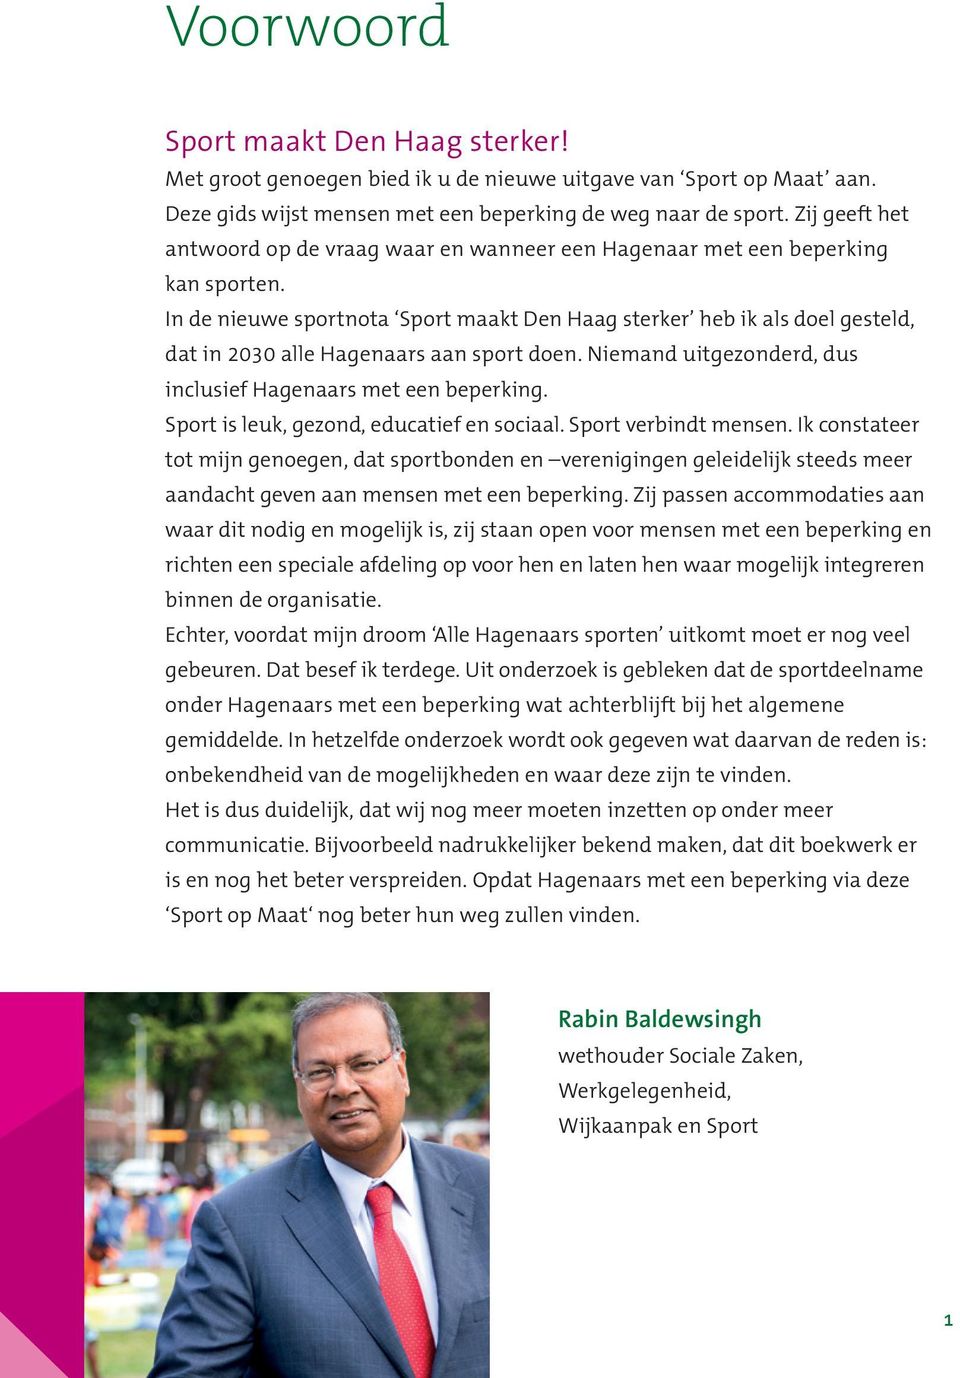 In de nieuwe sportnota Sport maakt Den Haag sterker heb ik als doel gesteld, dat in 2030 alle Hagenaars aan sport doen. Niemand uitgezonderd, dus inclusief Hagenaars met een beperking.